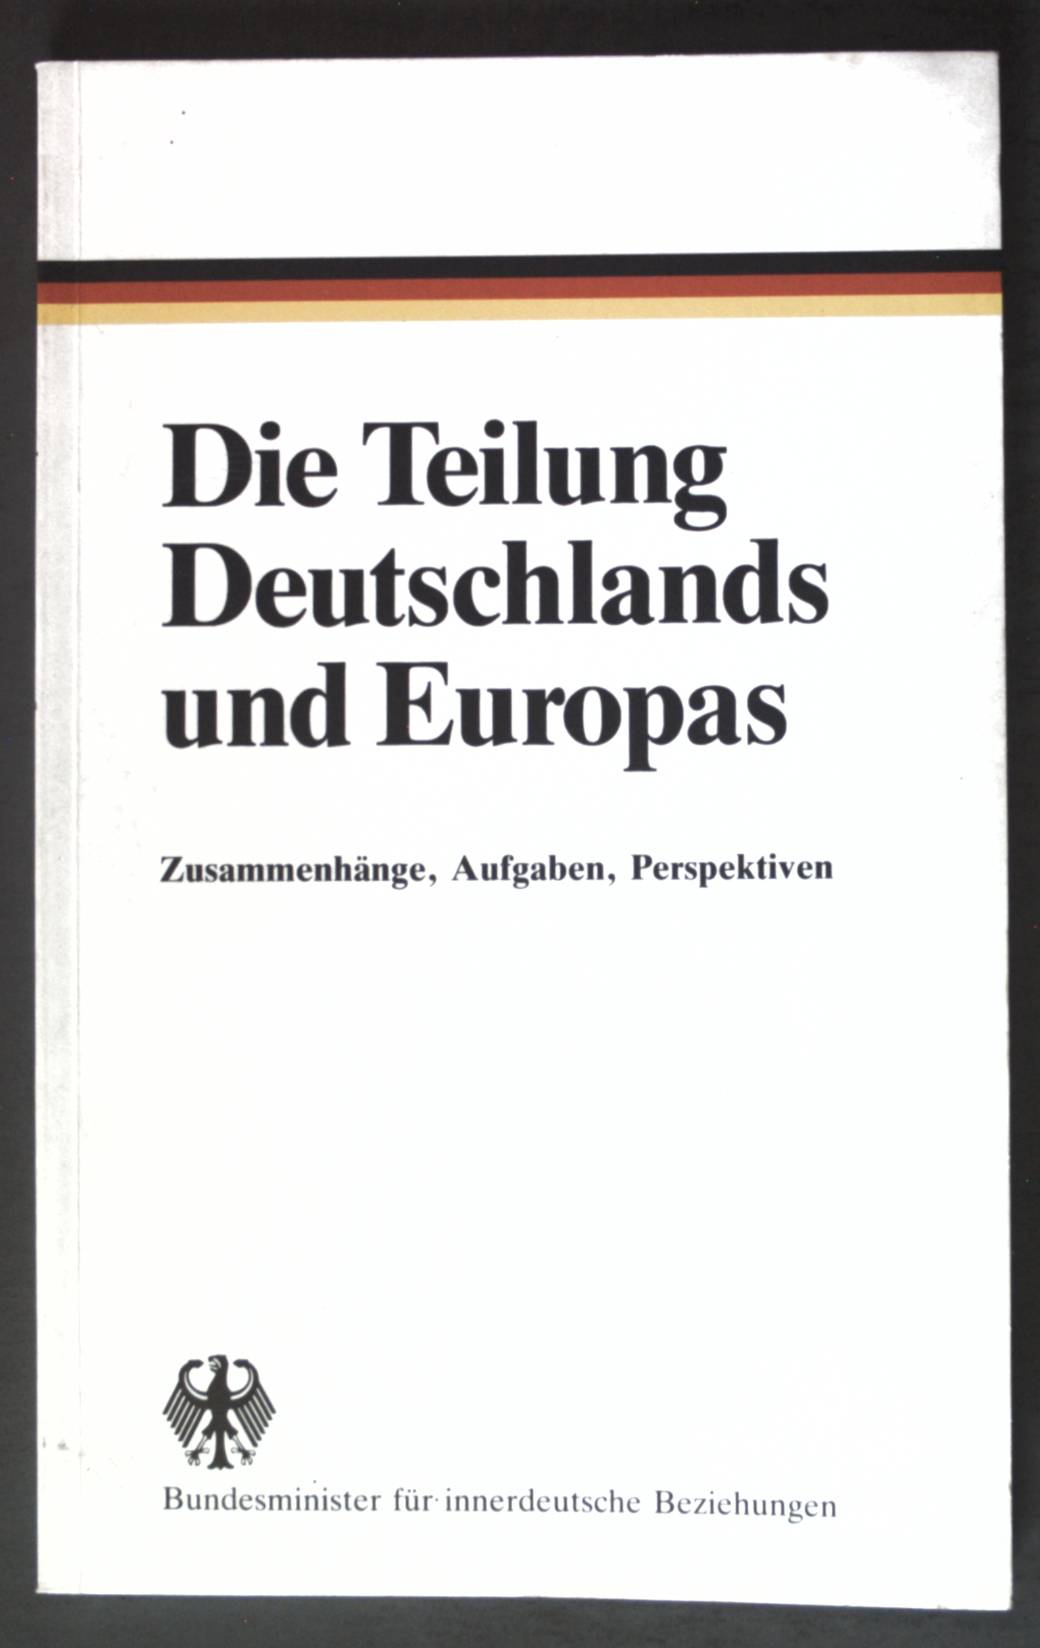 Die Teilung Deutschlands und Europas : Zusammenhänge, Aufgaben, Perspektiven. - Unknown Author